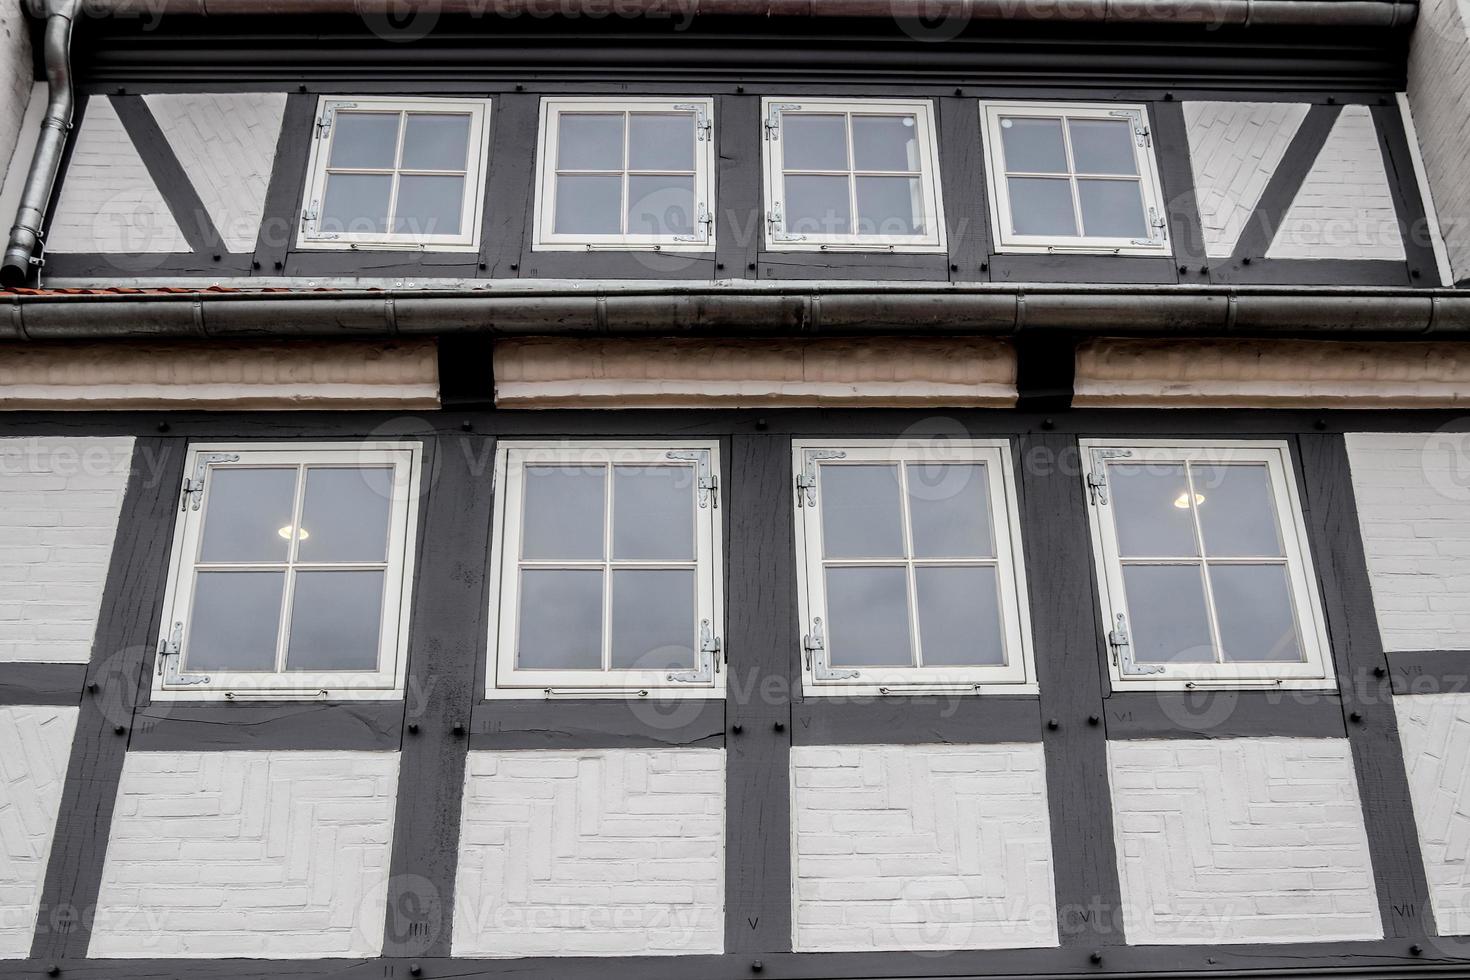 belle architecture ancienne de façades trouvée dans la petite ville de flensbourg photo